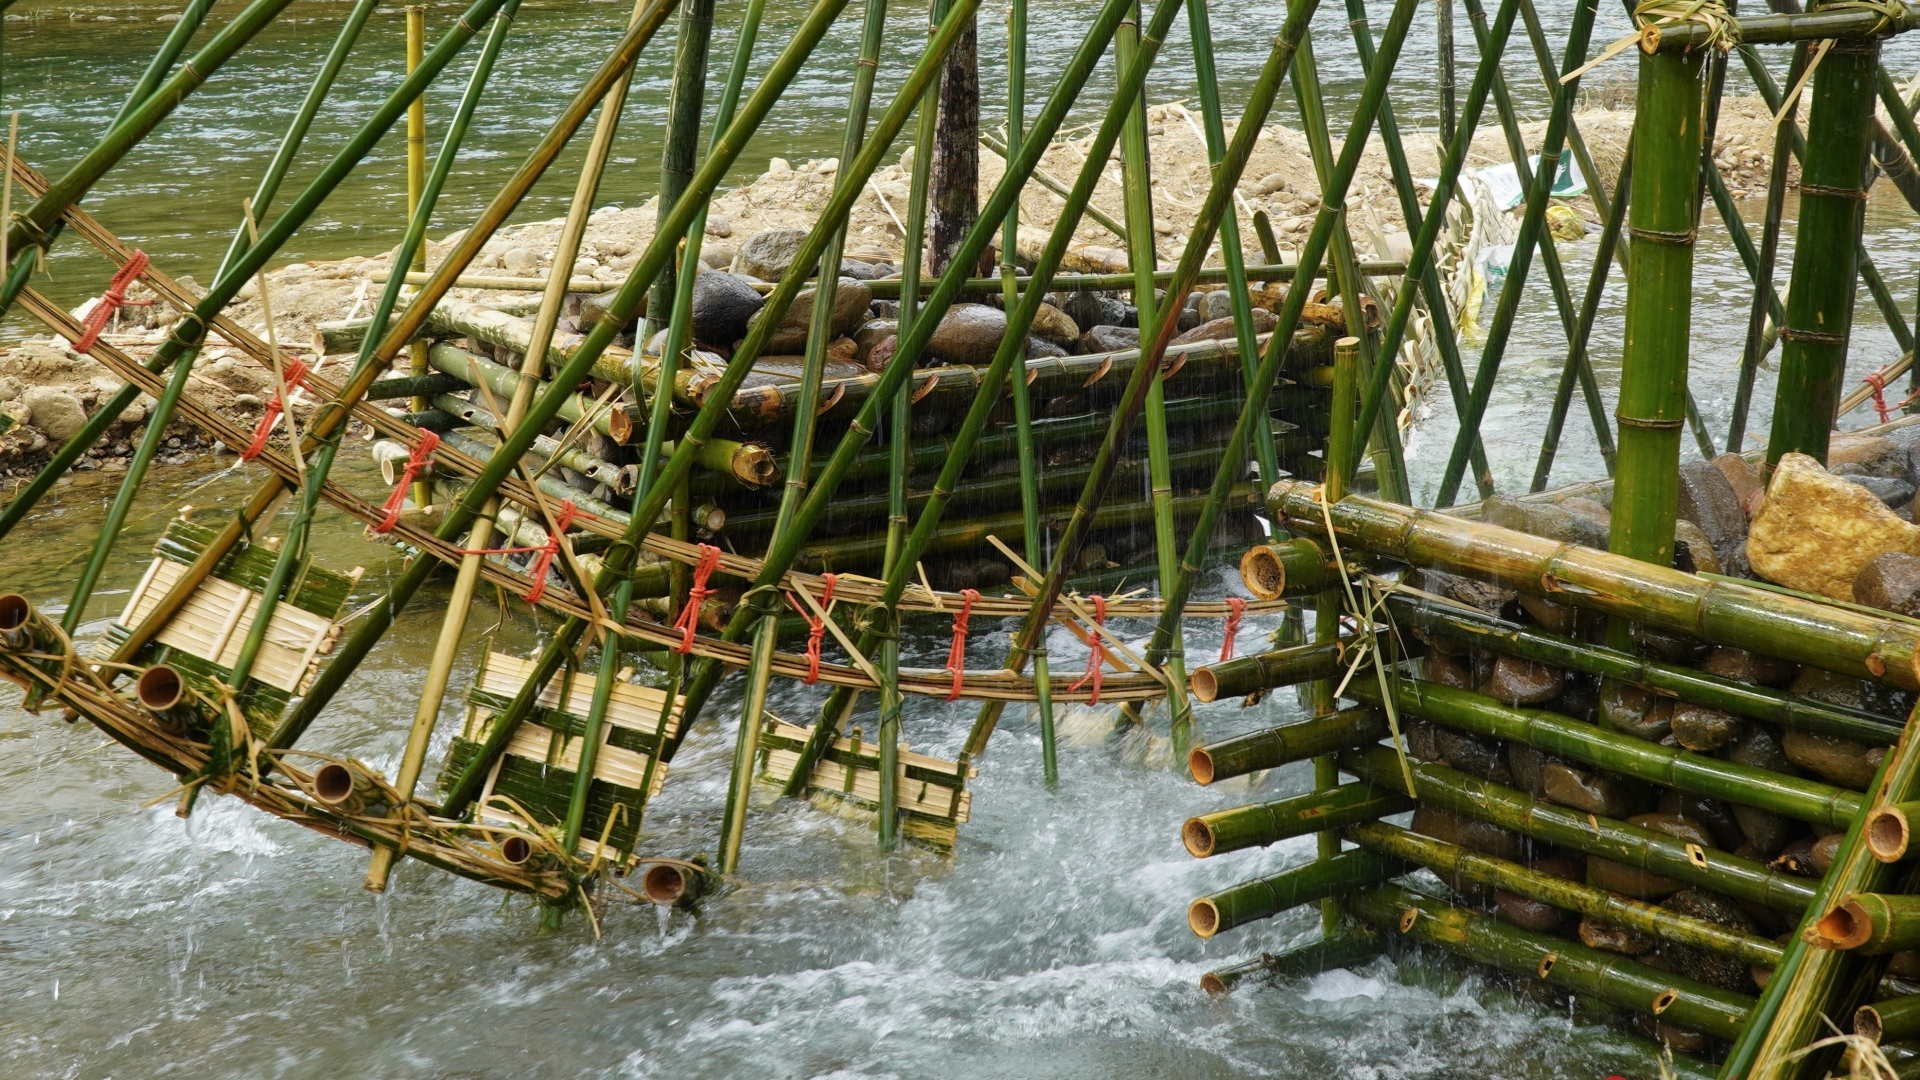 水车是当地傣族的传统文化特色。 水车引水入渠，灌溉农田。